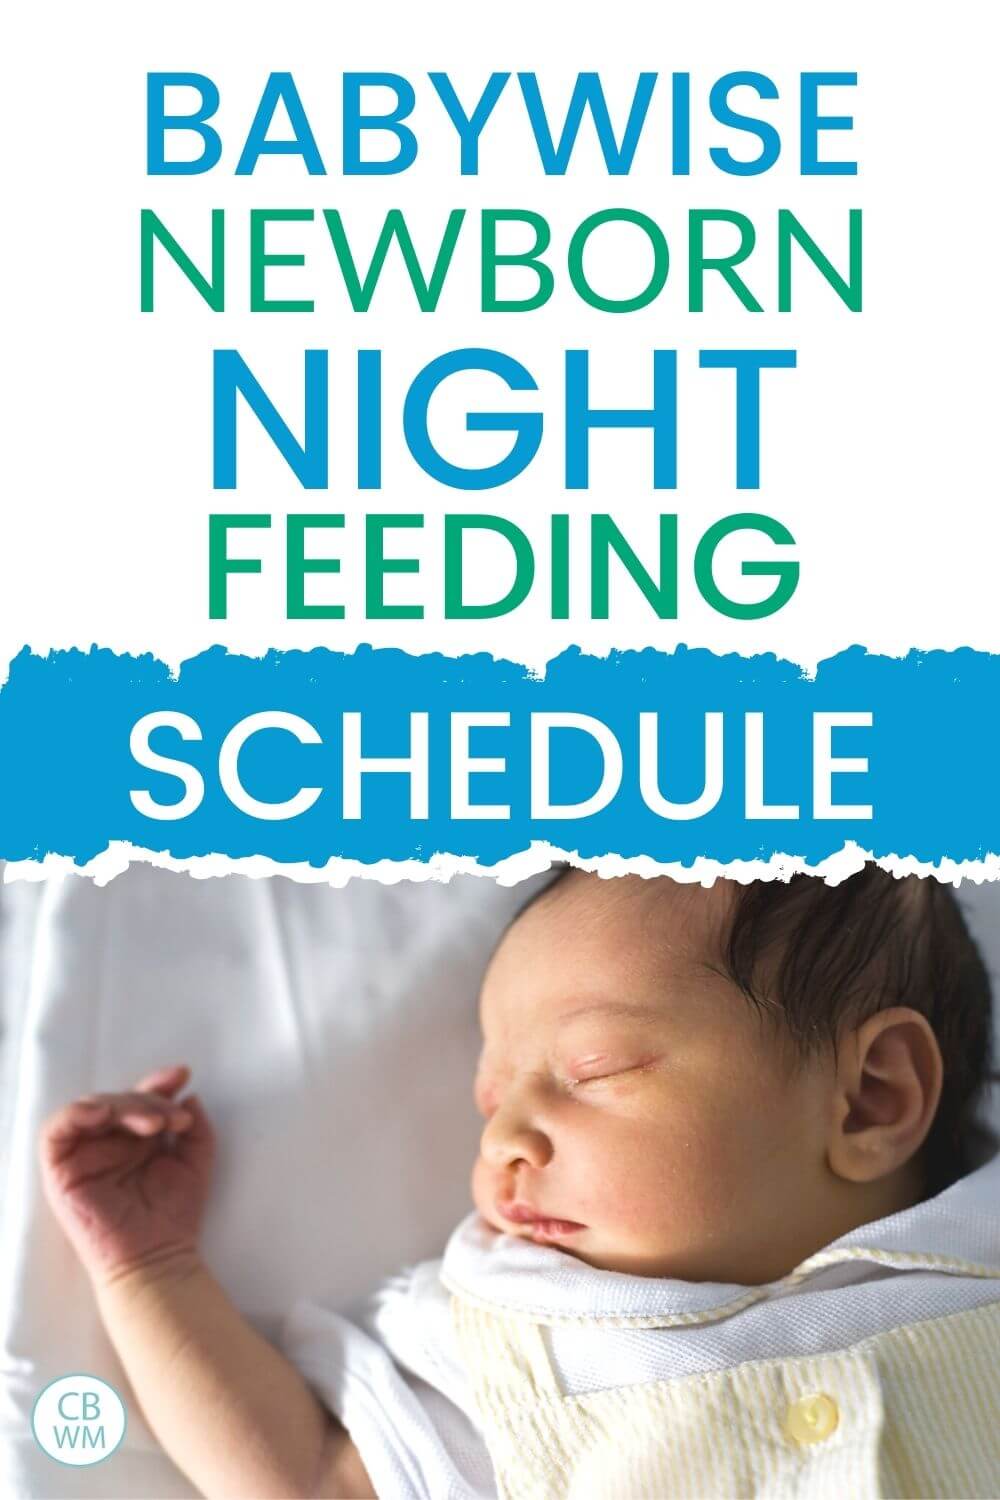 Babywise Newborn Night Feeding Schedule